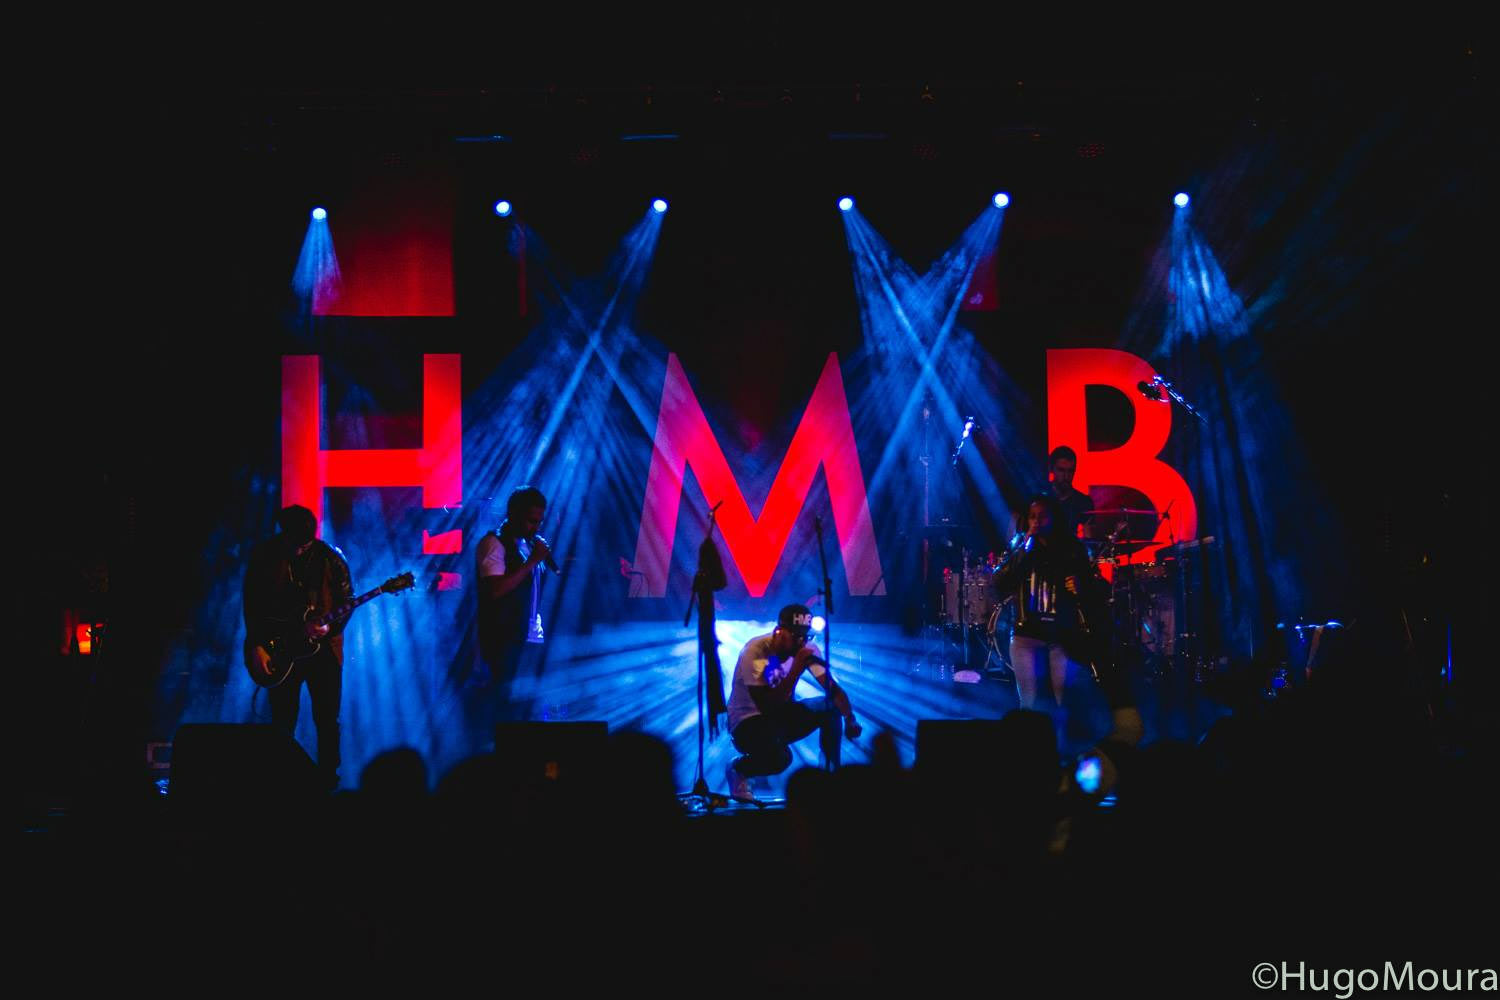 HMB, HMB Live, HMB Portugal, HMB ao vivo, Concertos dos HMB, Banda ao vivo, Banda HMB, Musica Portuguesa, R&B, Soul Music